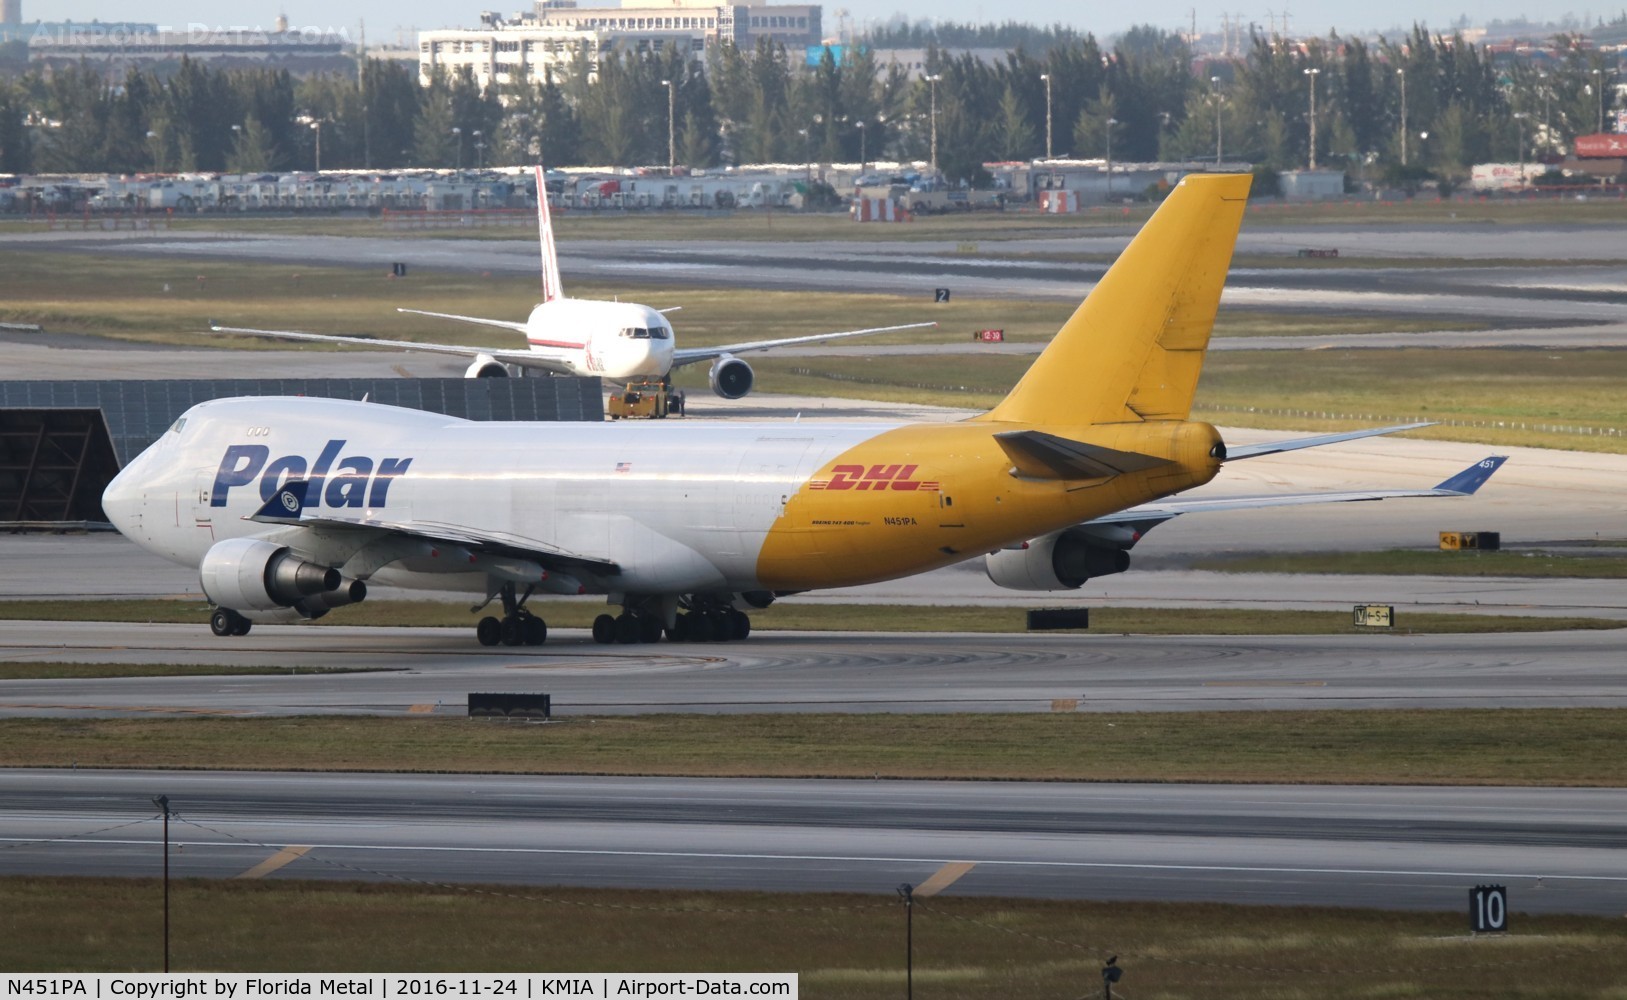 N451PA, 2000 Boeing 747-46NF C/N 30809, Polar 747-400F zx